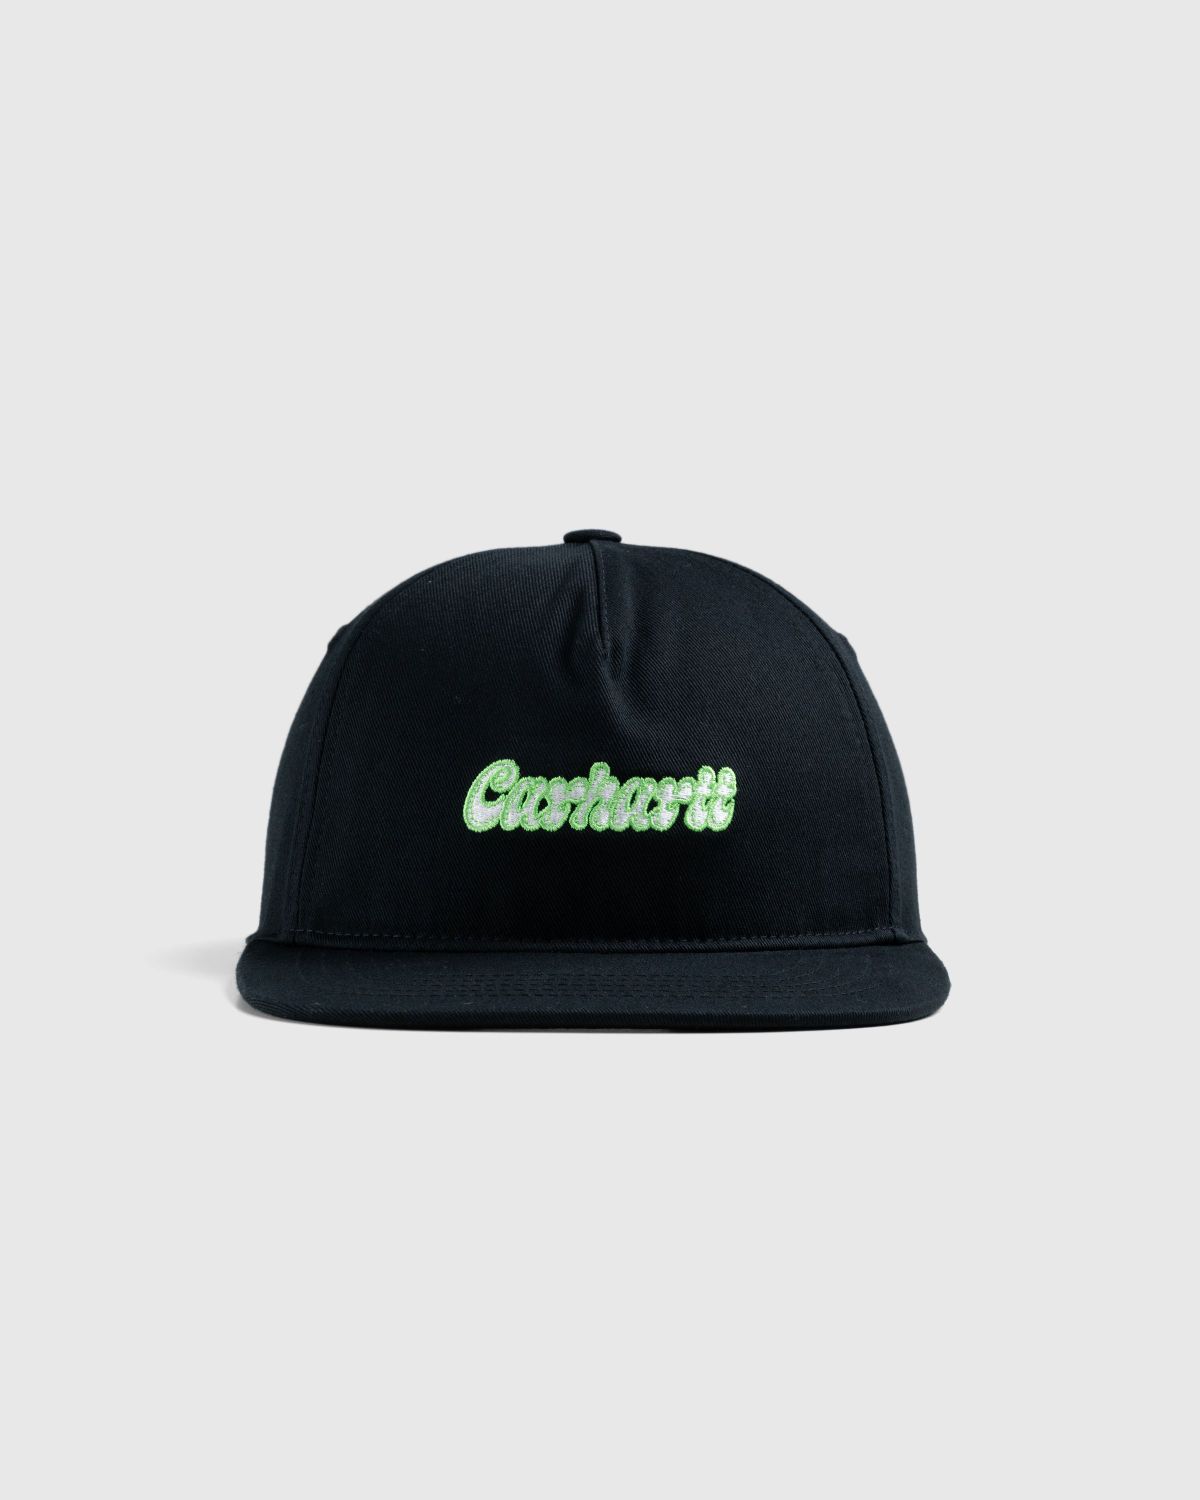 Carhartt WIP – Liquid Script Cap Black - Hats - Black - Image 2